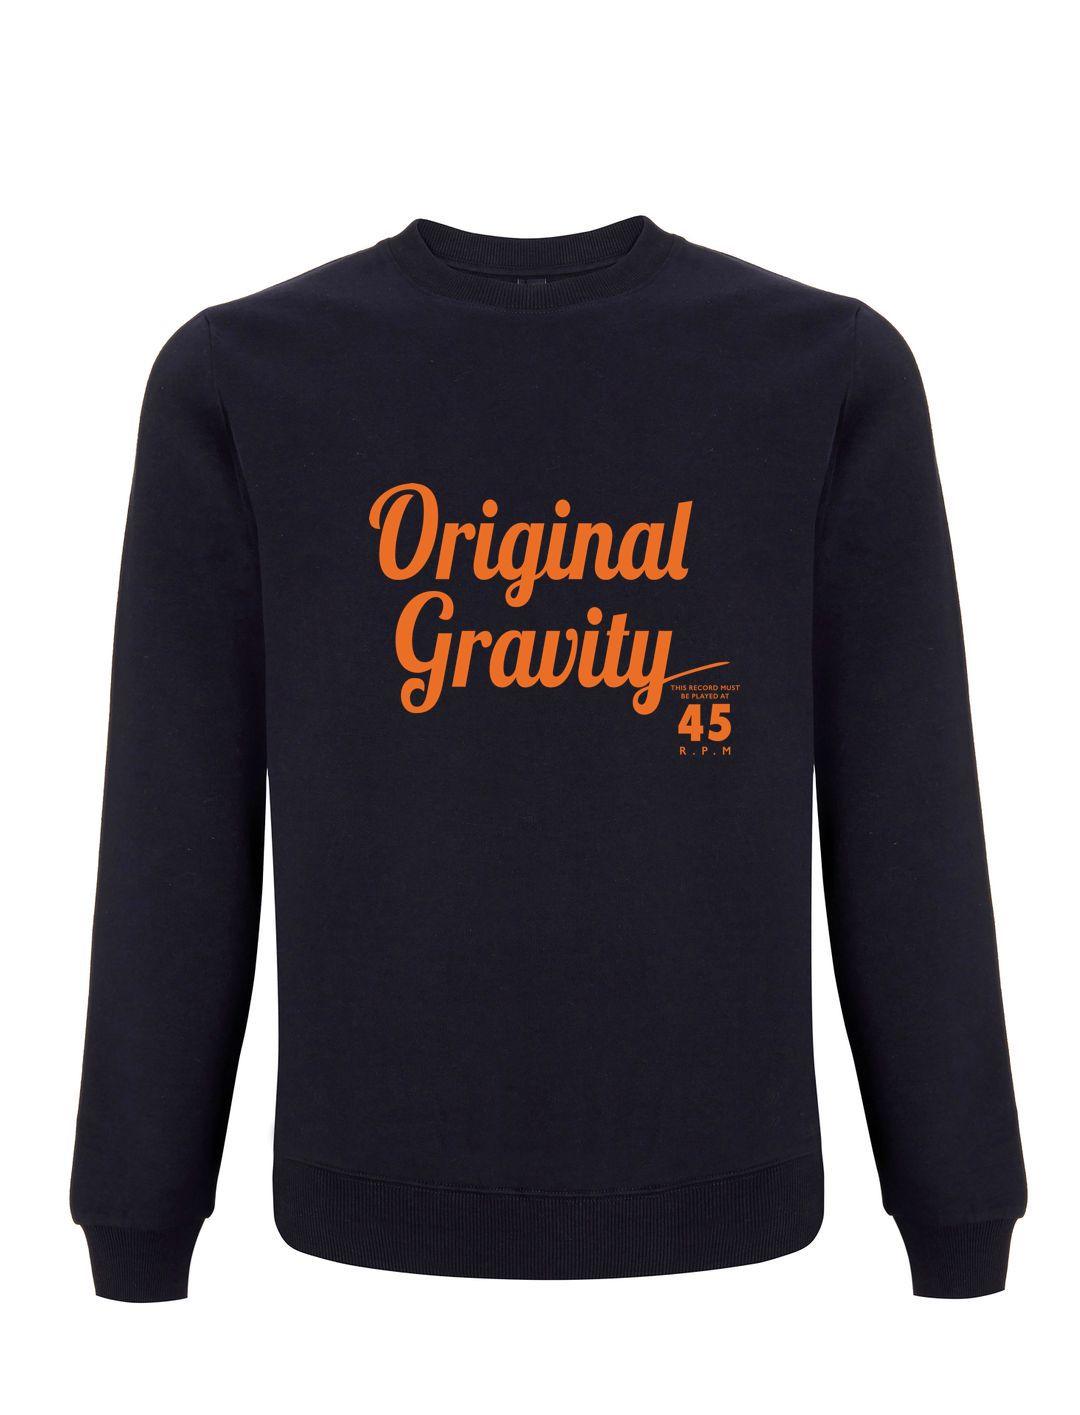 PLAYS at 45 RPM: Original Gravity Records Sweatshirt (3 Colour Options) - SOUND IS COLOUR